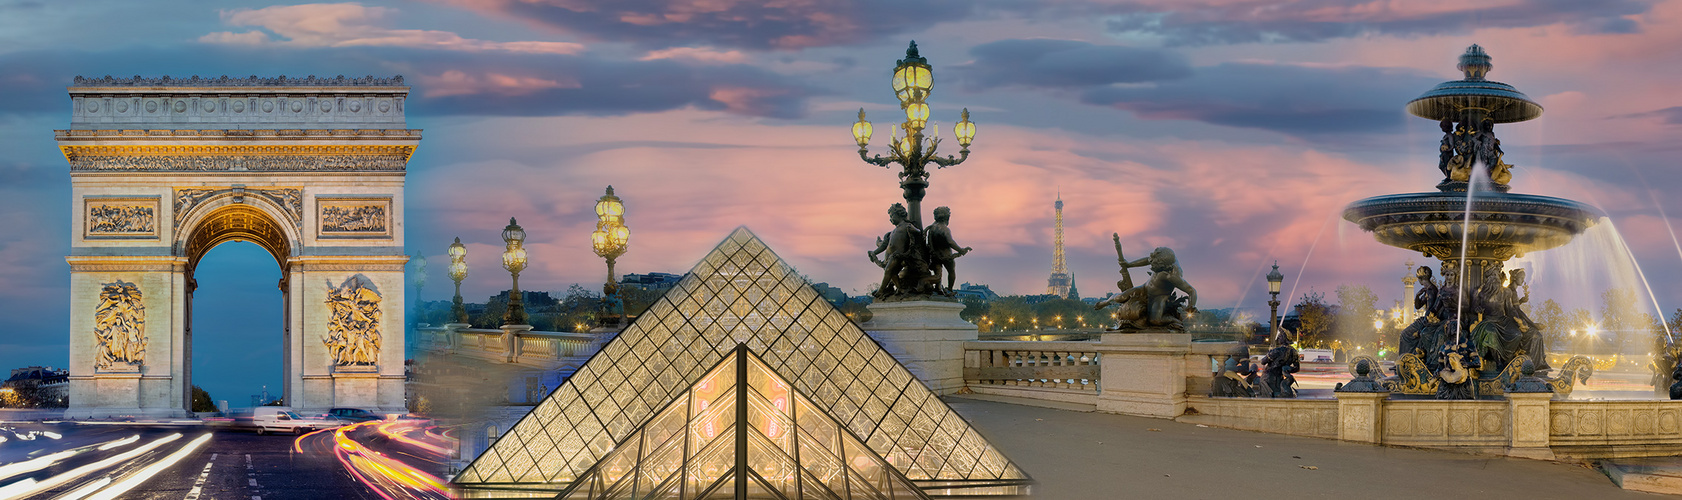 Paris beleuchtet Collage Abendrot